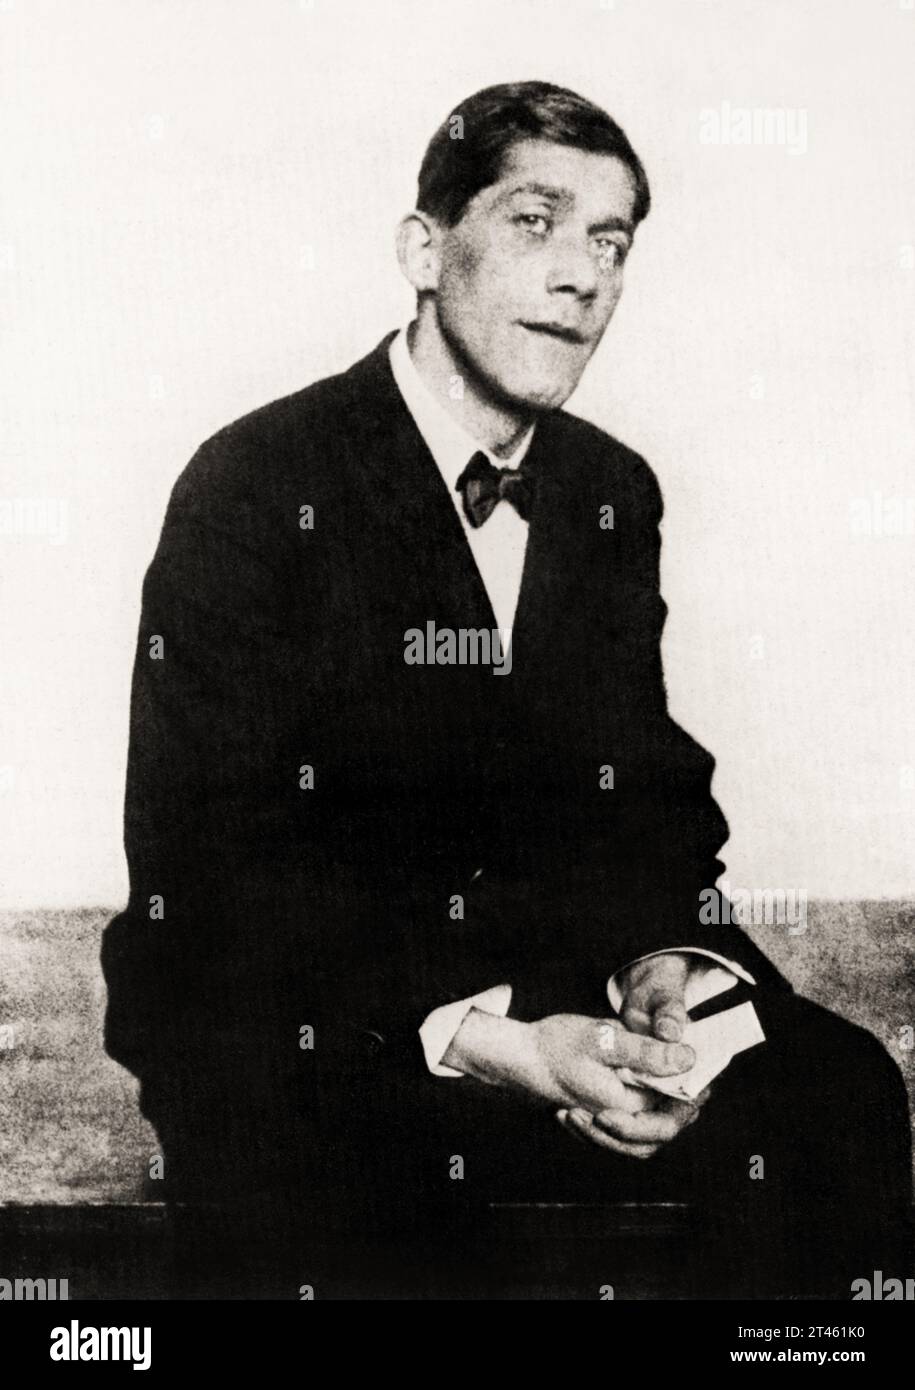 1920 , ÖSTERREICH : der gefeierte österreichische EXPRESSIONIST Maler, Dichter und Dramatiker OSKAR KOKOSCHKA ( 1886–1980 ). Porträt von Hugo Erfurth ( 1874 - 1948 ) . - GESCHICHTE - FOTO STORICHE - ESPRESSIONISMO - ESPRESSIONISTA - EXPRESSIONISMUS - KUNST - ARTE - PITTURA - Malerei - PITTORE - Künstler - artista - Porträt - ritratto - Krawatte Schleife - cravatta papillon - Kragen - Colletto - DRAMMATURGO - TEATRO - THEATER - POESIE - POESIE - POETA --- ARCHIVIO GBB Stockfoto